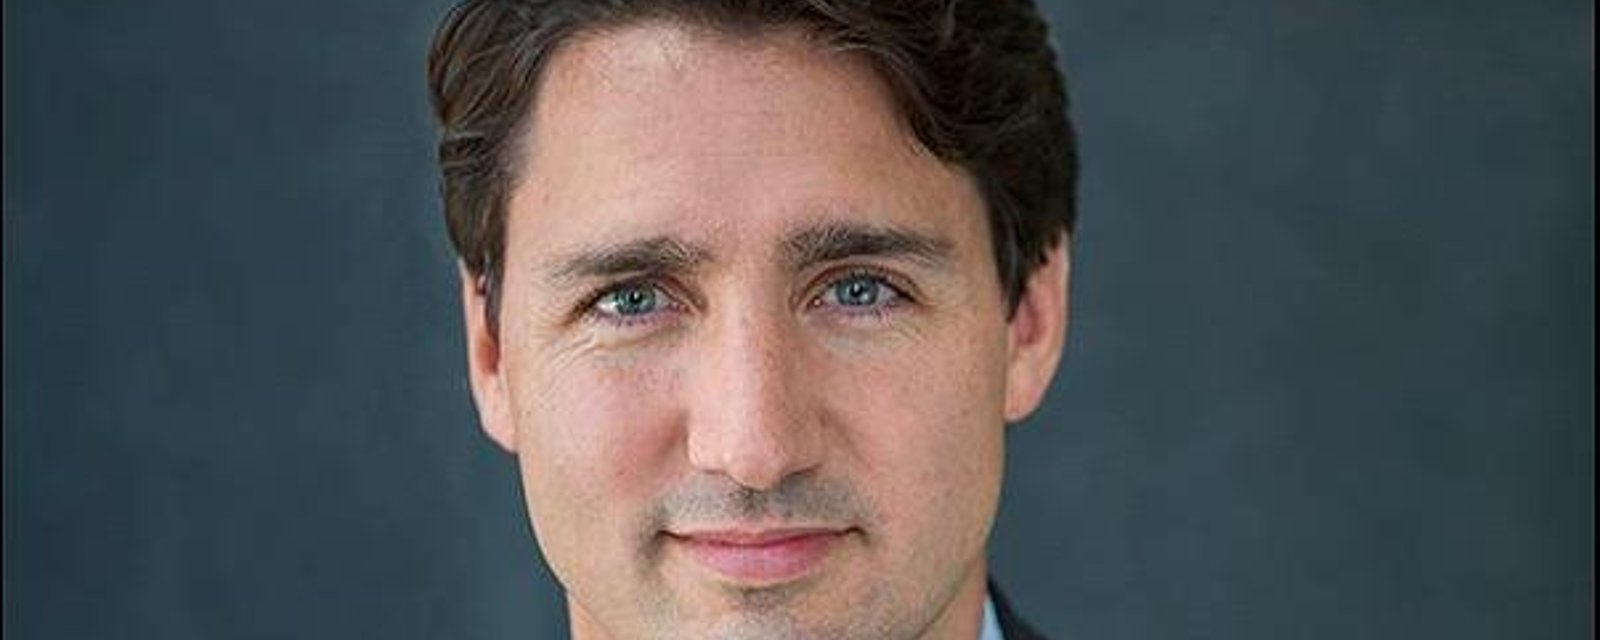 Justin Trudeau rend hommage à son frère Michel, décédé dans un terrible accident, avec une magnifique photo